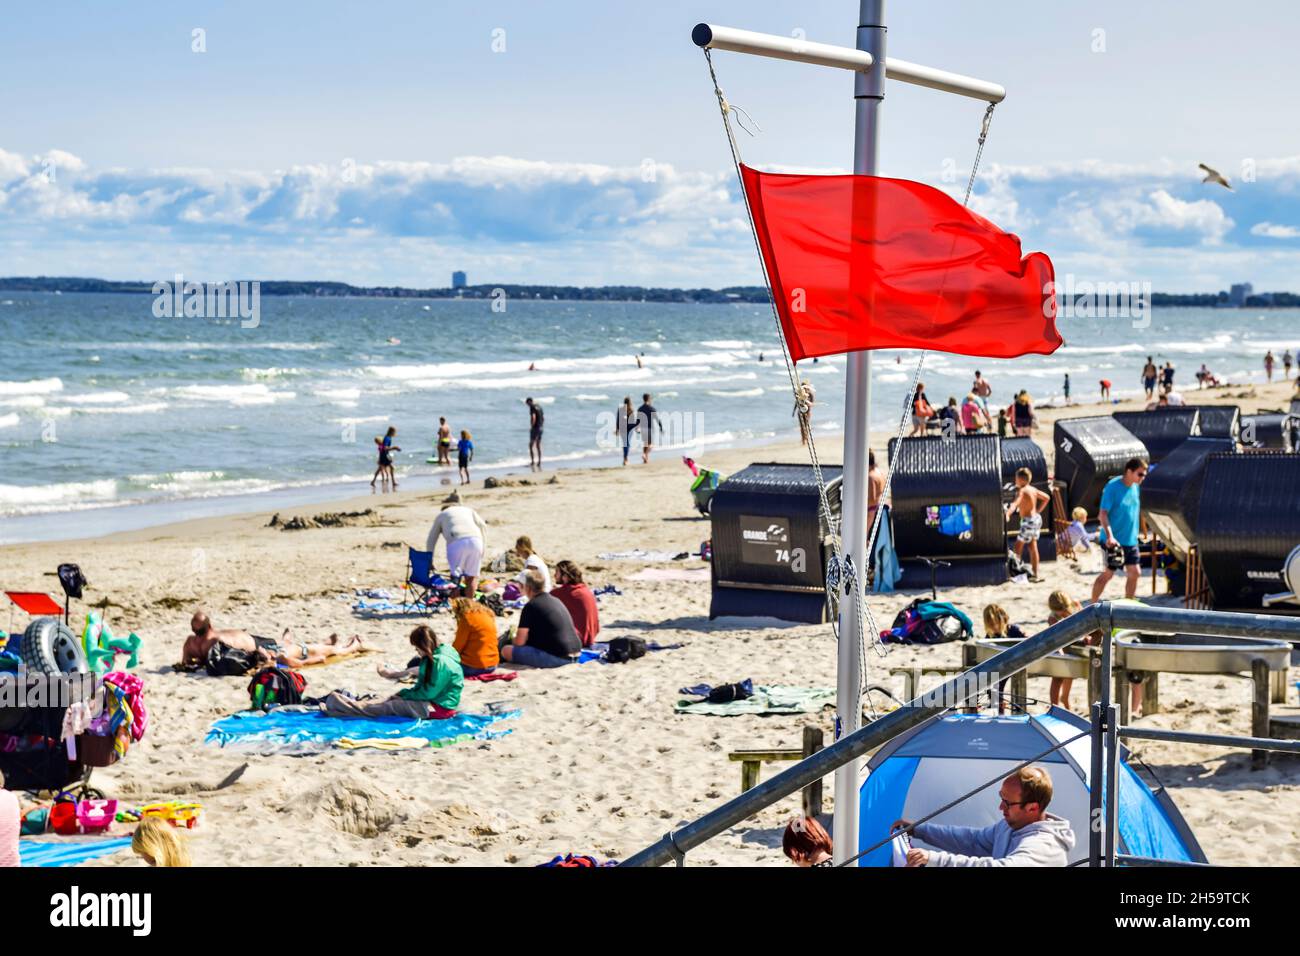 Rote Fahne der DLRG am Ostsee-Strand zeigt Badeverbot an in Scharbeutz, Schleswig-Holstein, Deutschland, Europa Stock Photo